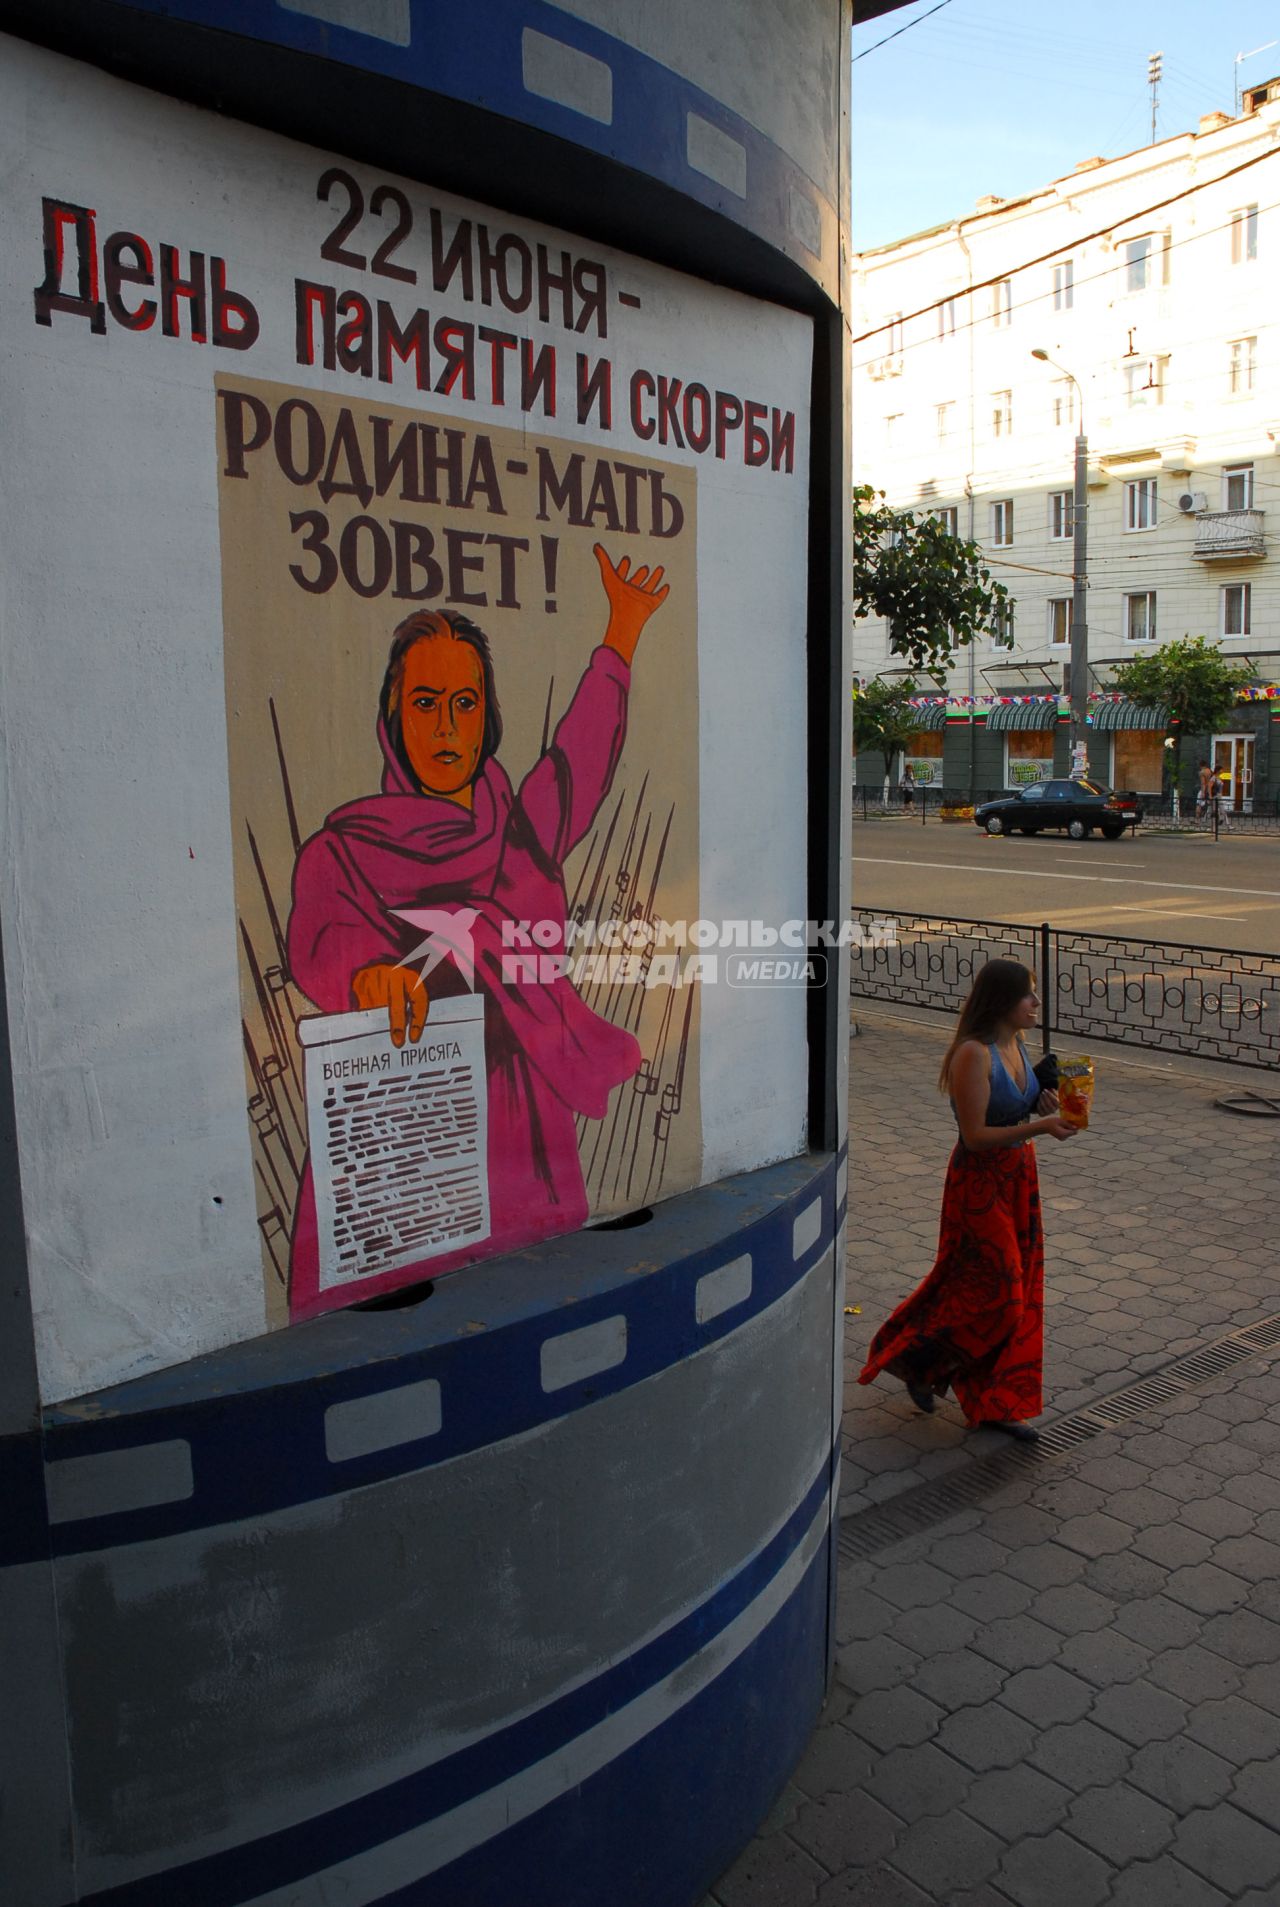 Копия плаката `Родина-мать зовёт`, в качестве афиши, рядом проходит девушка, ест чипсы.